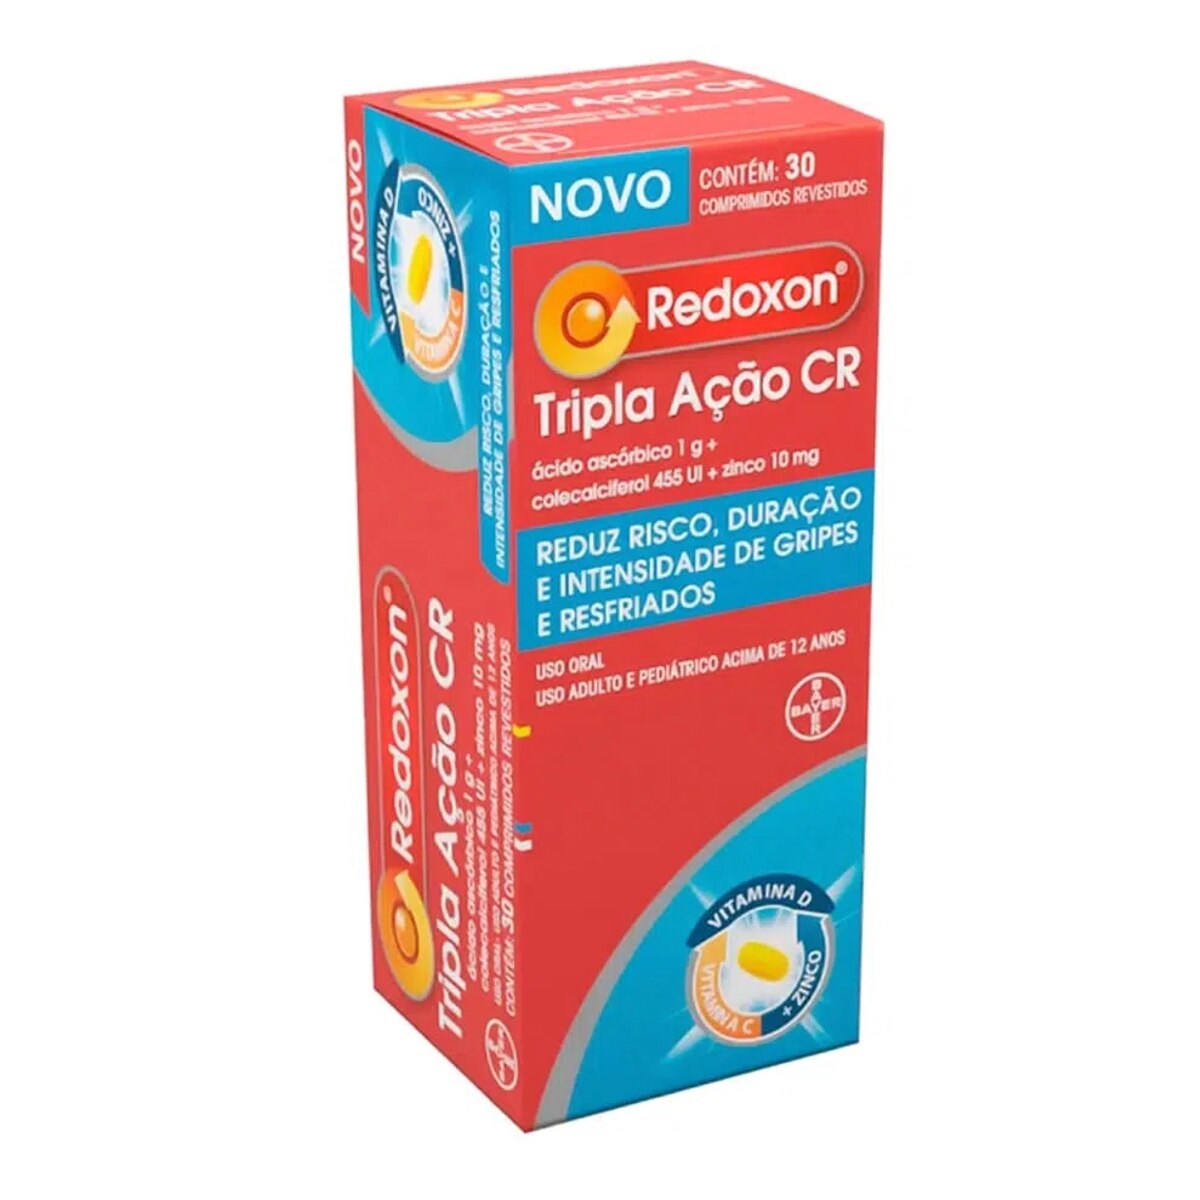 Redoxon Tripla Acao CR 30 Comprimidos Revestidos